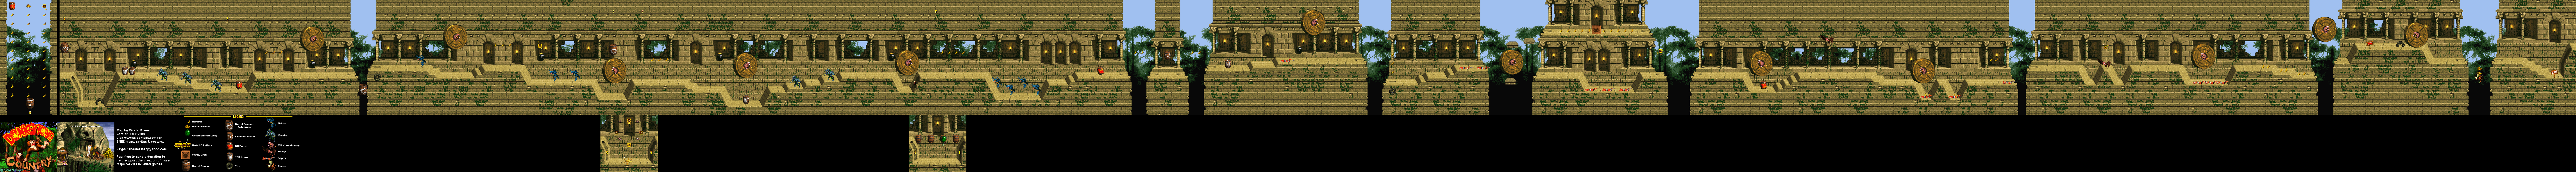 Donkey Kong Country - Level 11 - Millstone Mayhem - Super Nintendo SNES Map